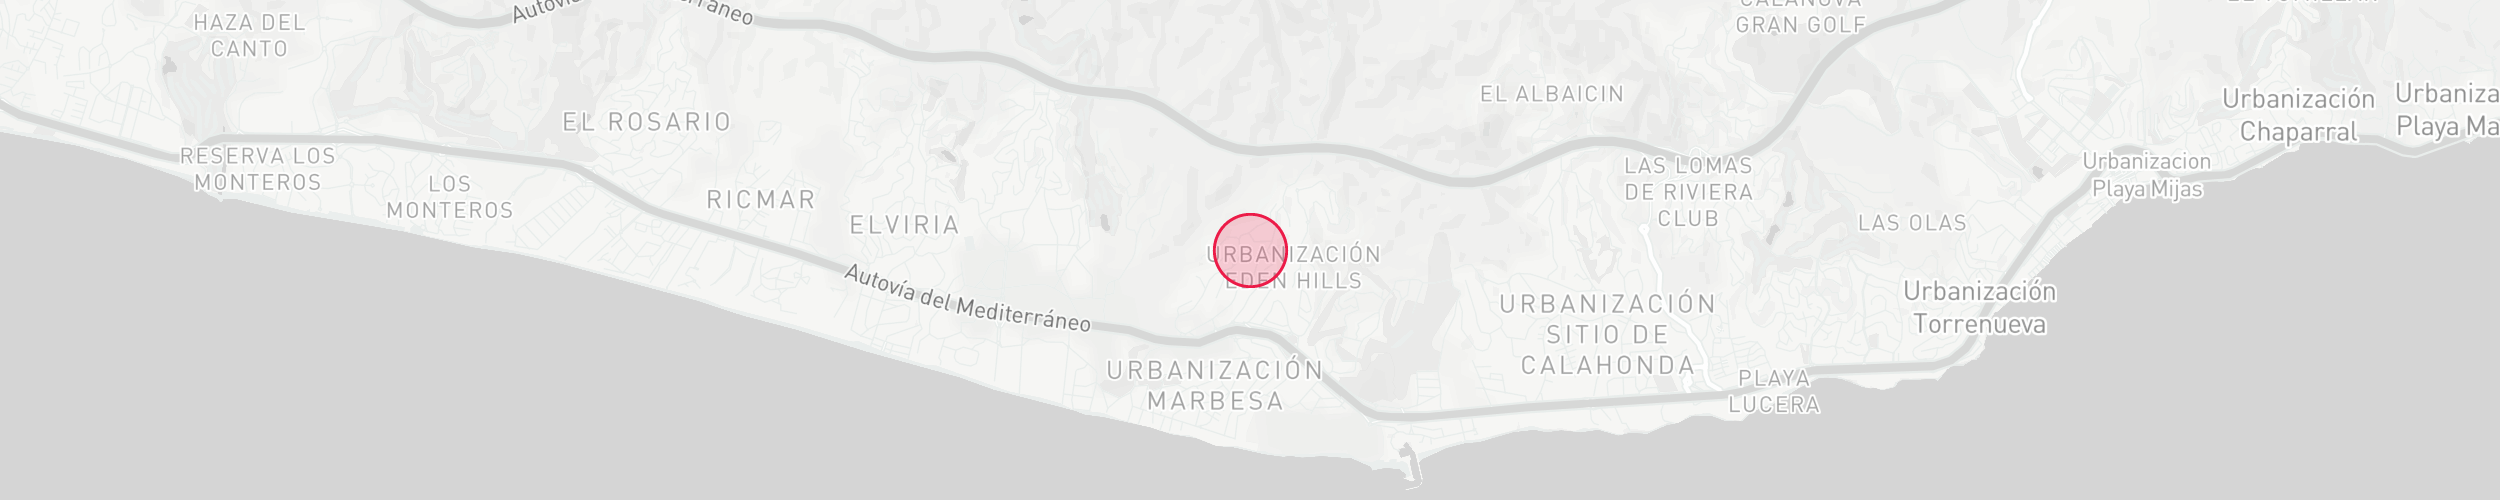 Mapa de localización de la propiedad - Hacienda las Chapas